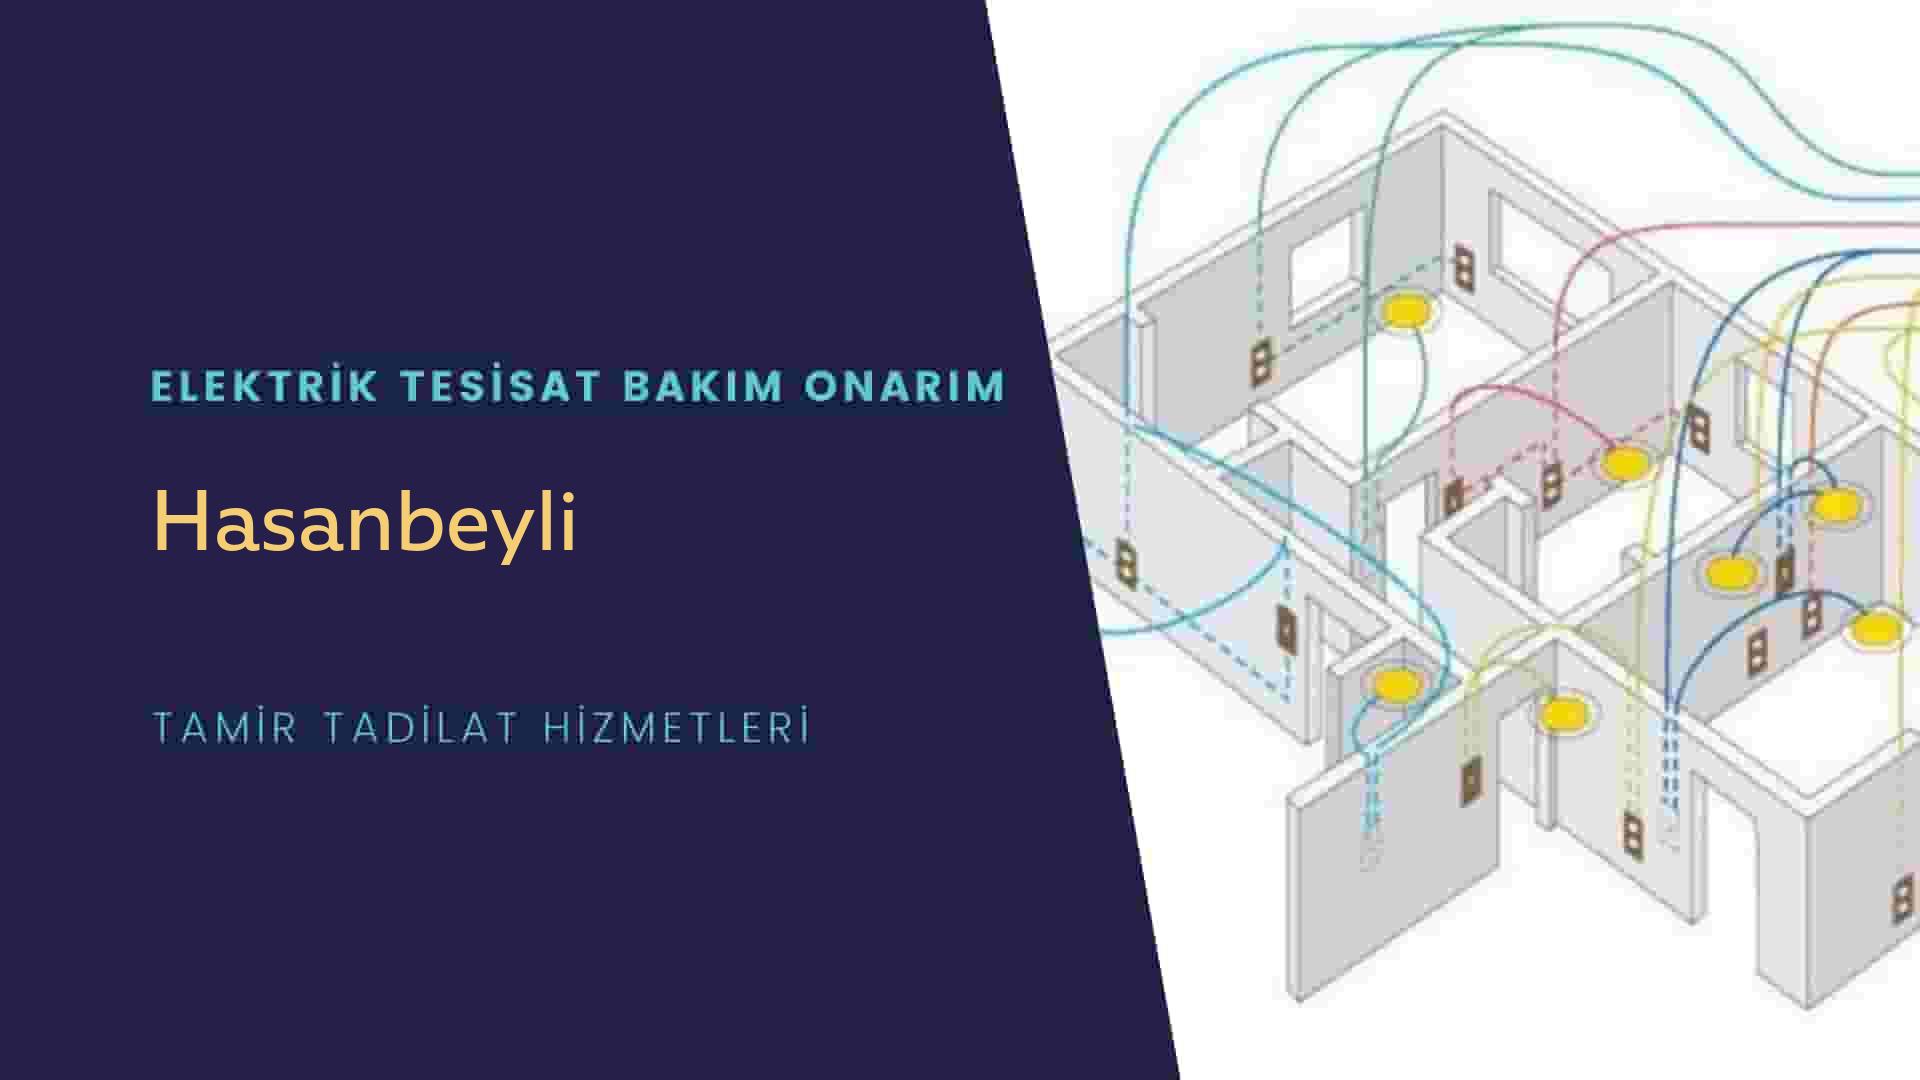 Hasanbeyli'de elektrik tesisatı ustalarımı arıyorsunuz doğru adrestenizi Hasanbeyli elektrik tesisatı ustalarımız 7/24 sizlere hizmet vermekten mutluluk duyar.